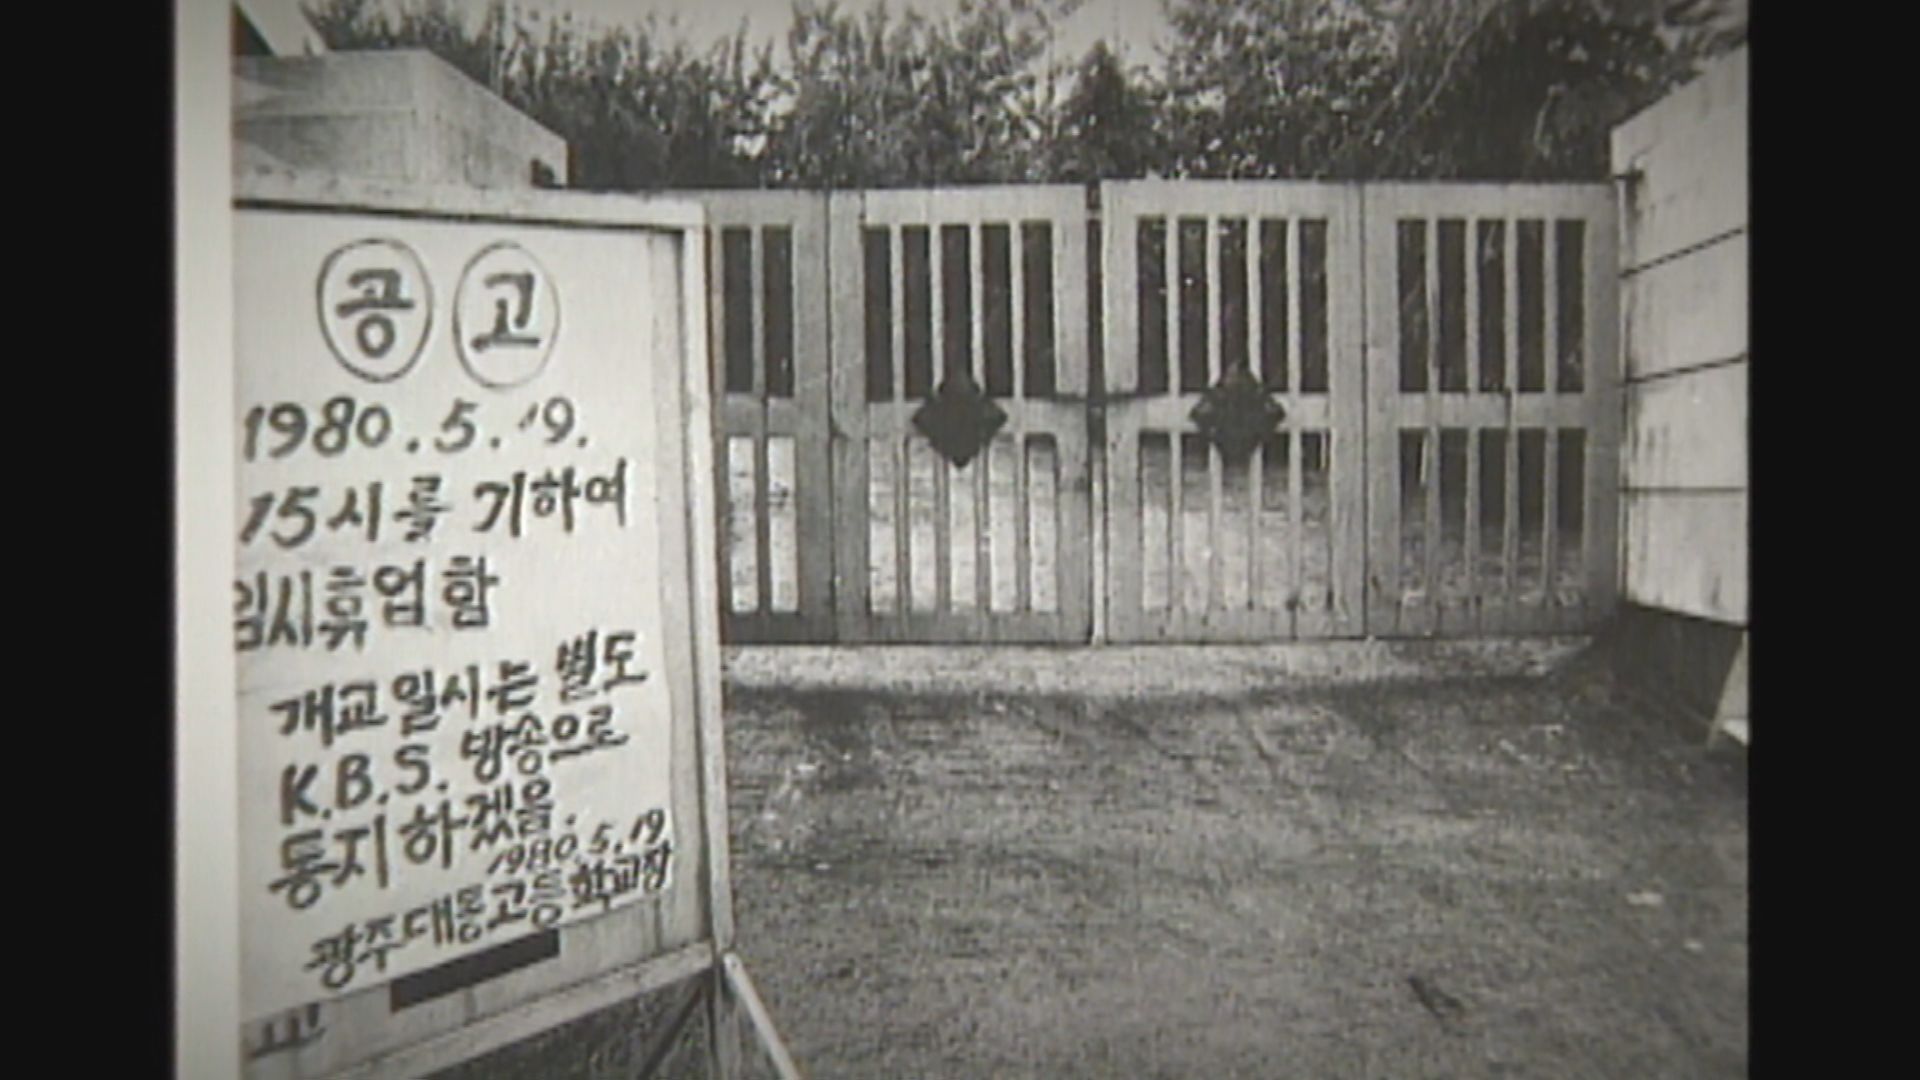 1980년 5월 19일, 휴업 조치가 내려진 광주 대동고등학교 (출처: KBS 자료화면)